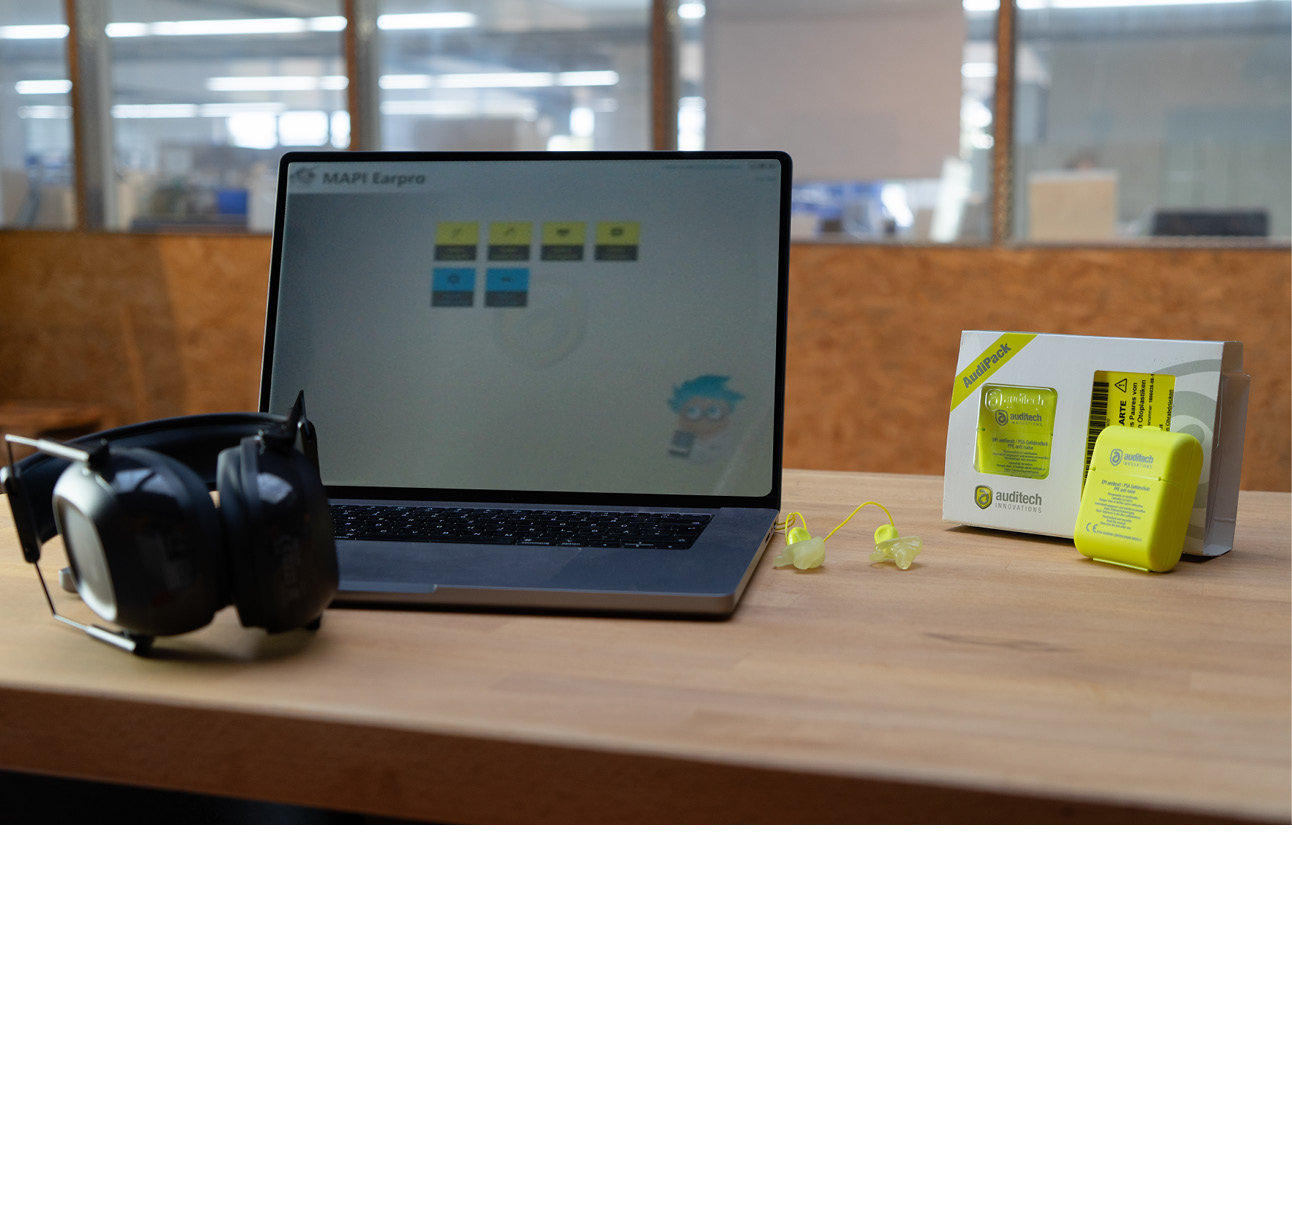 Abbildung eines Laptops auf einer Arbeitsplatte. Links ein Kapselgehörschutz, rechts ein angepasster Gehörschutz mit Verpackung